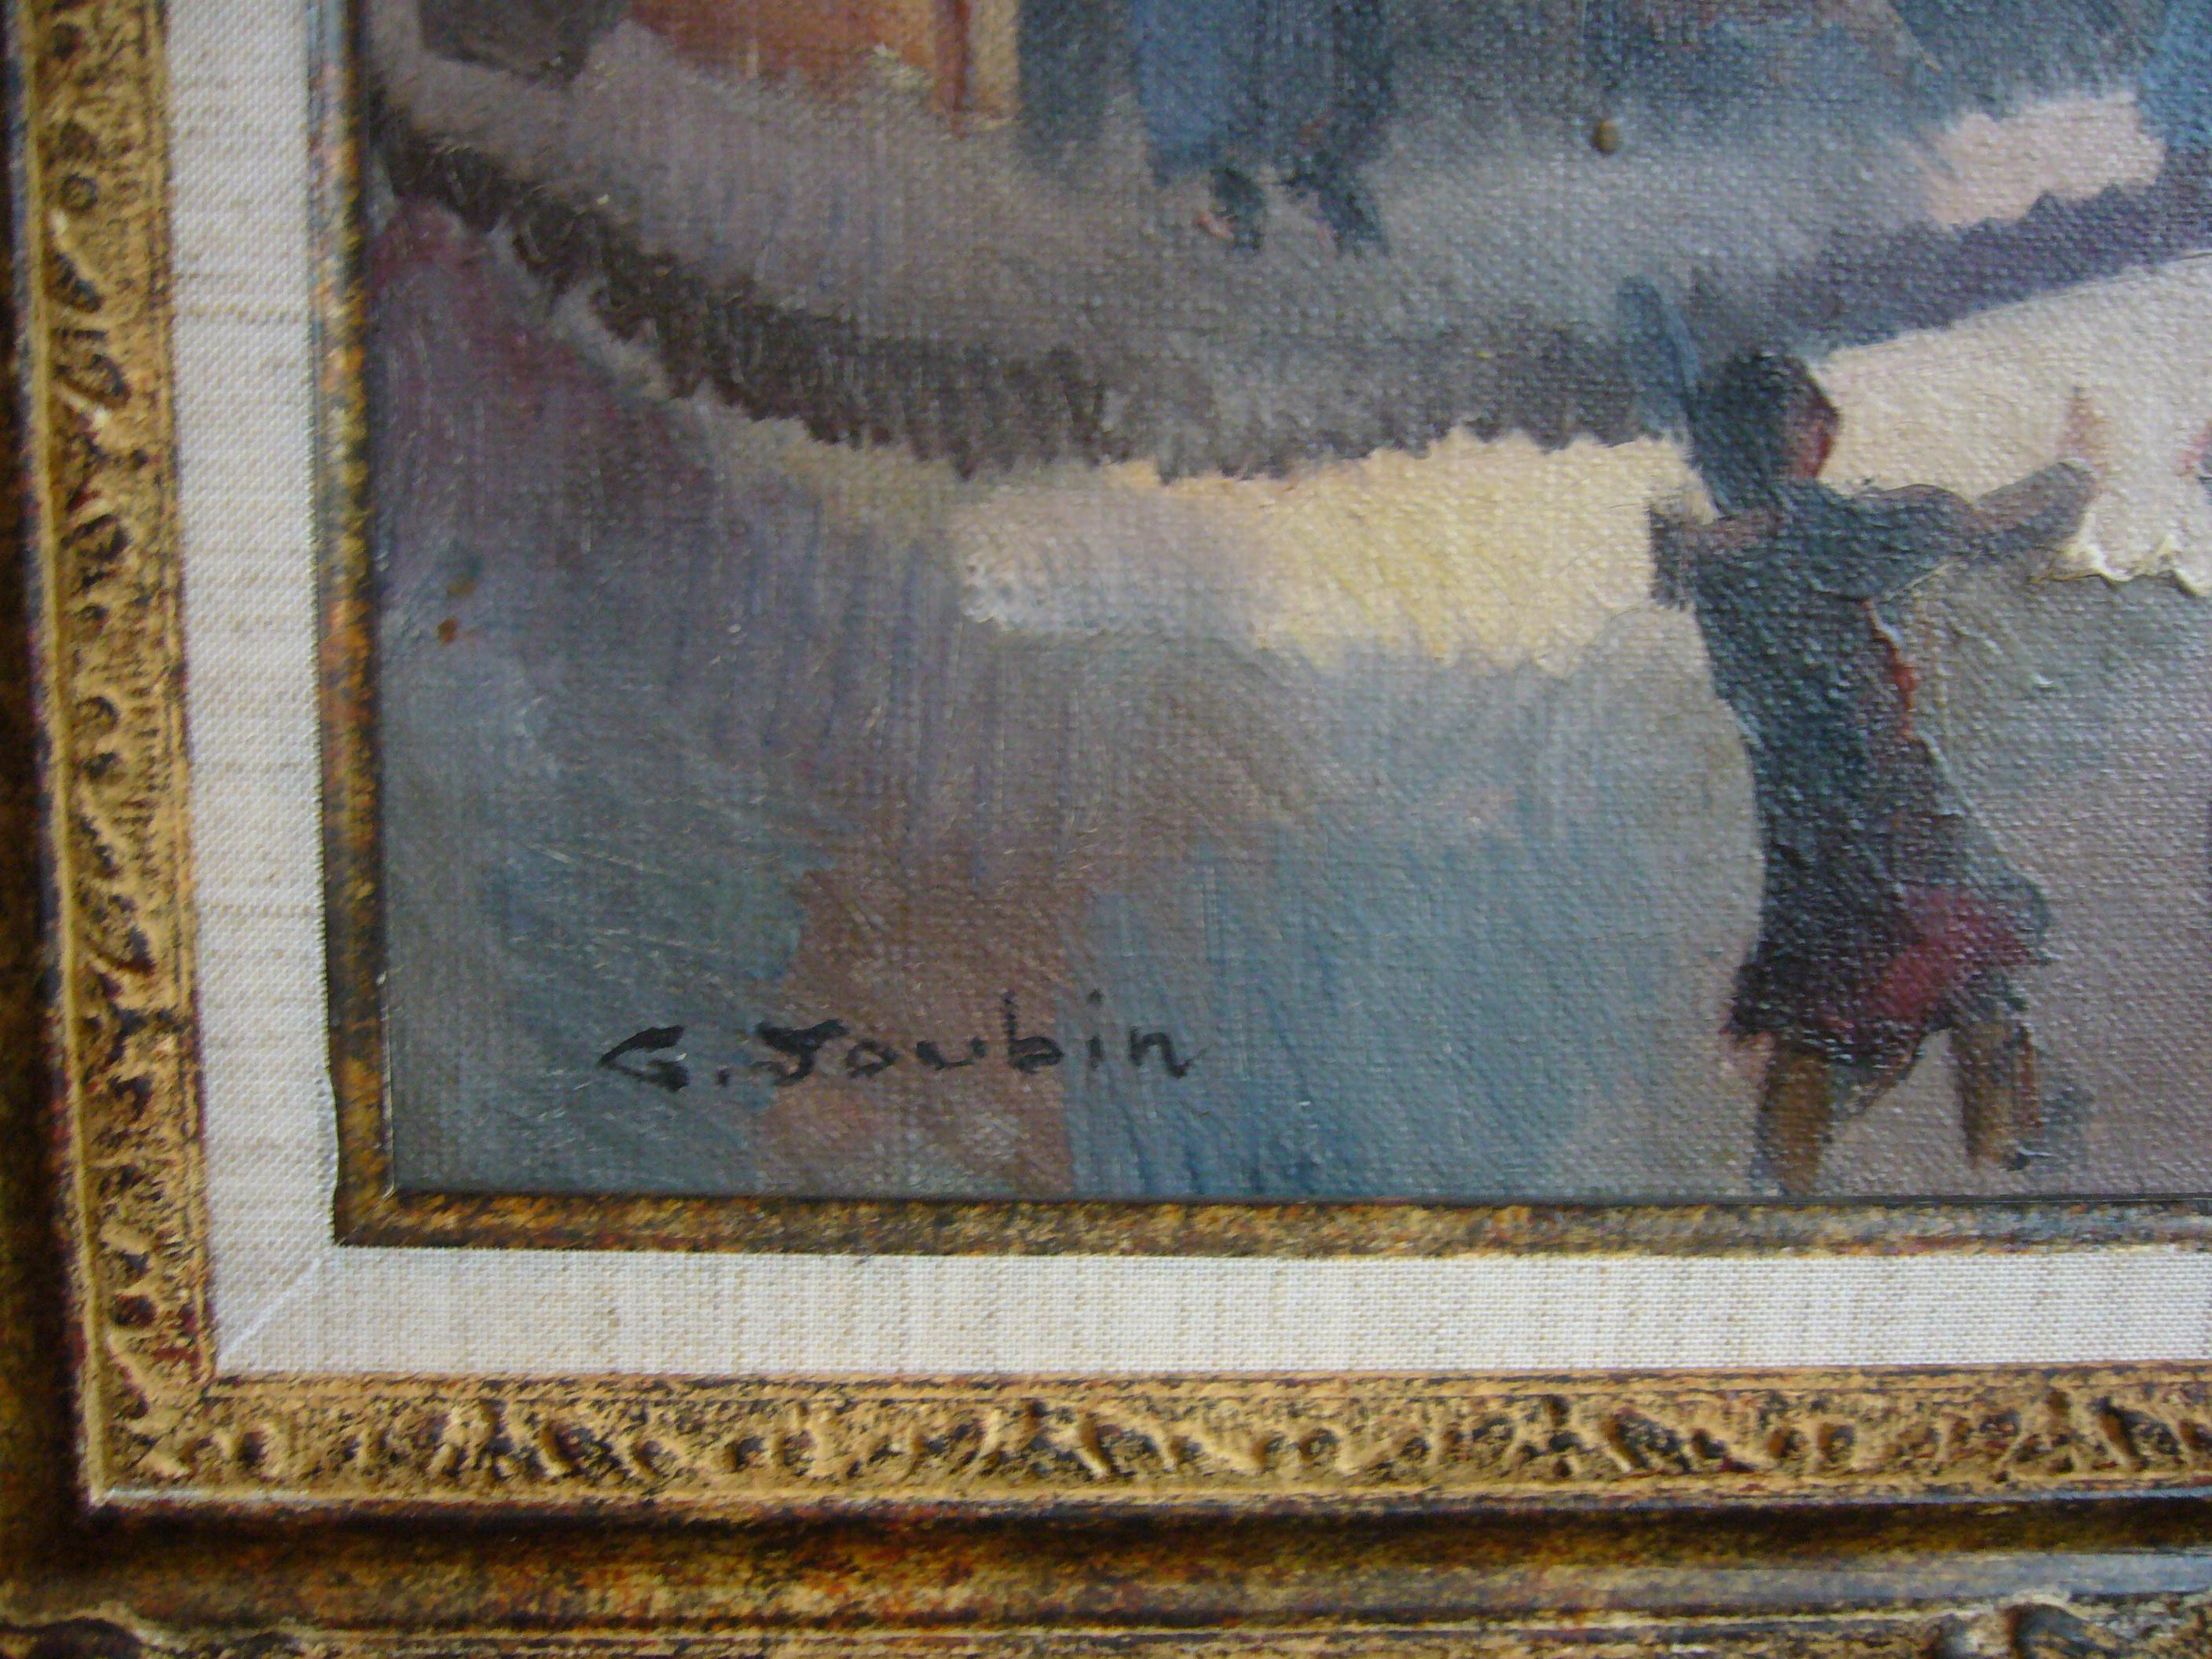 Quartier de Paris - Montmartre, '30s - oil paint, 55x46 cm., framed - Painting by Georges Joubin